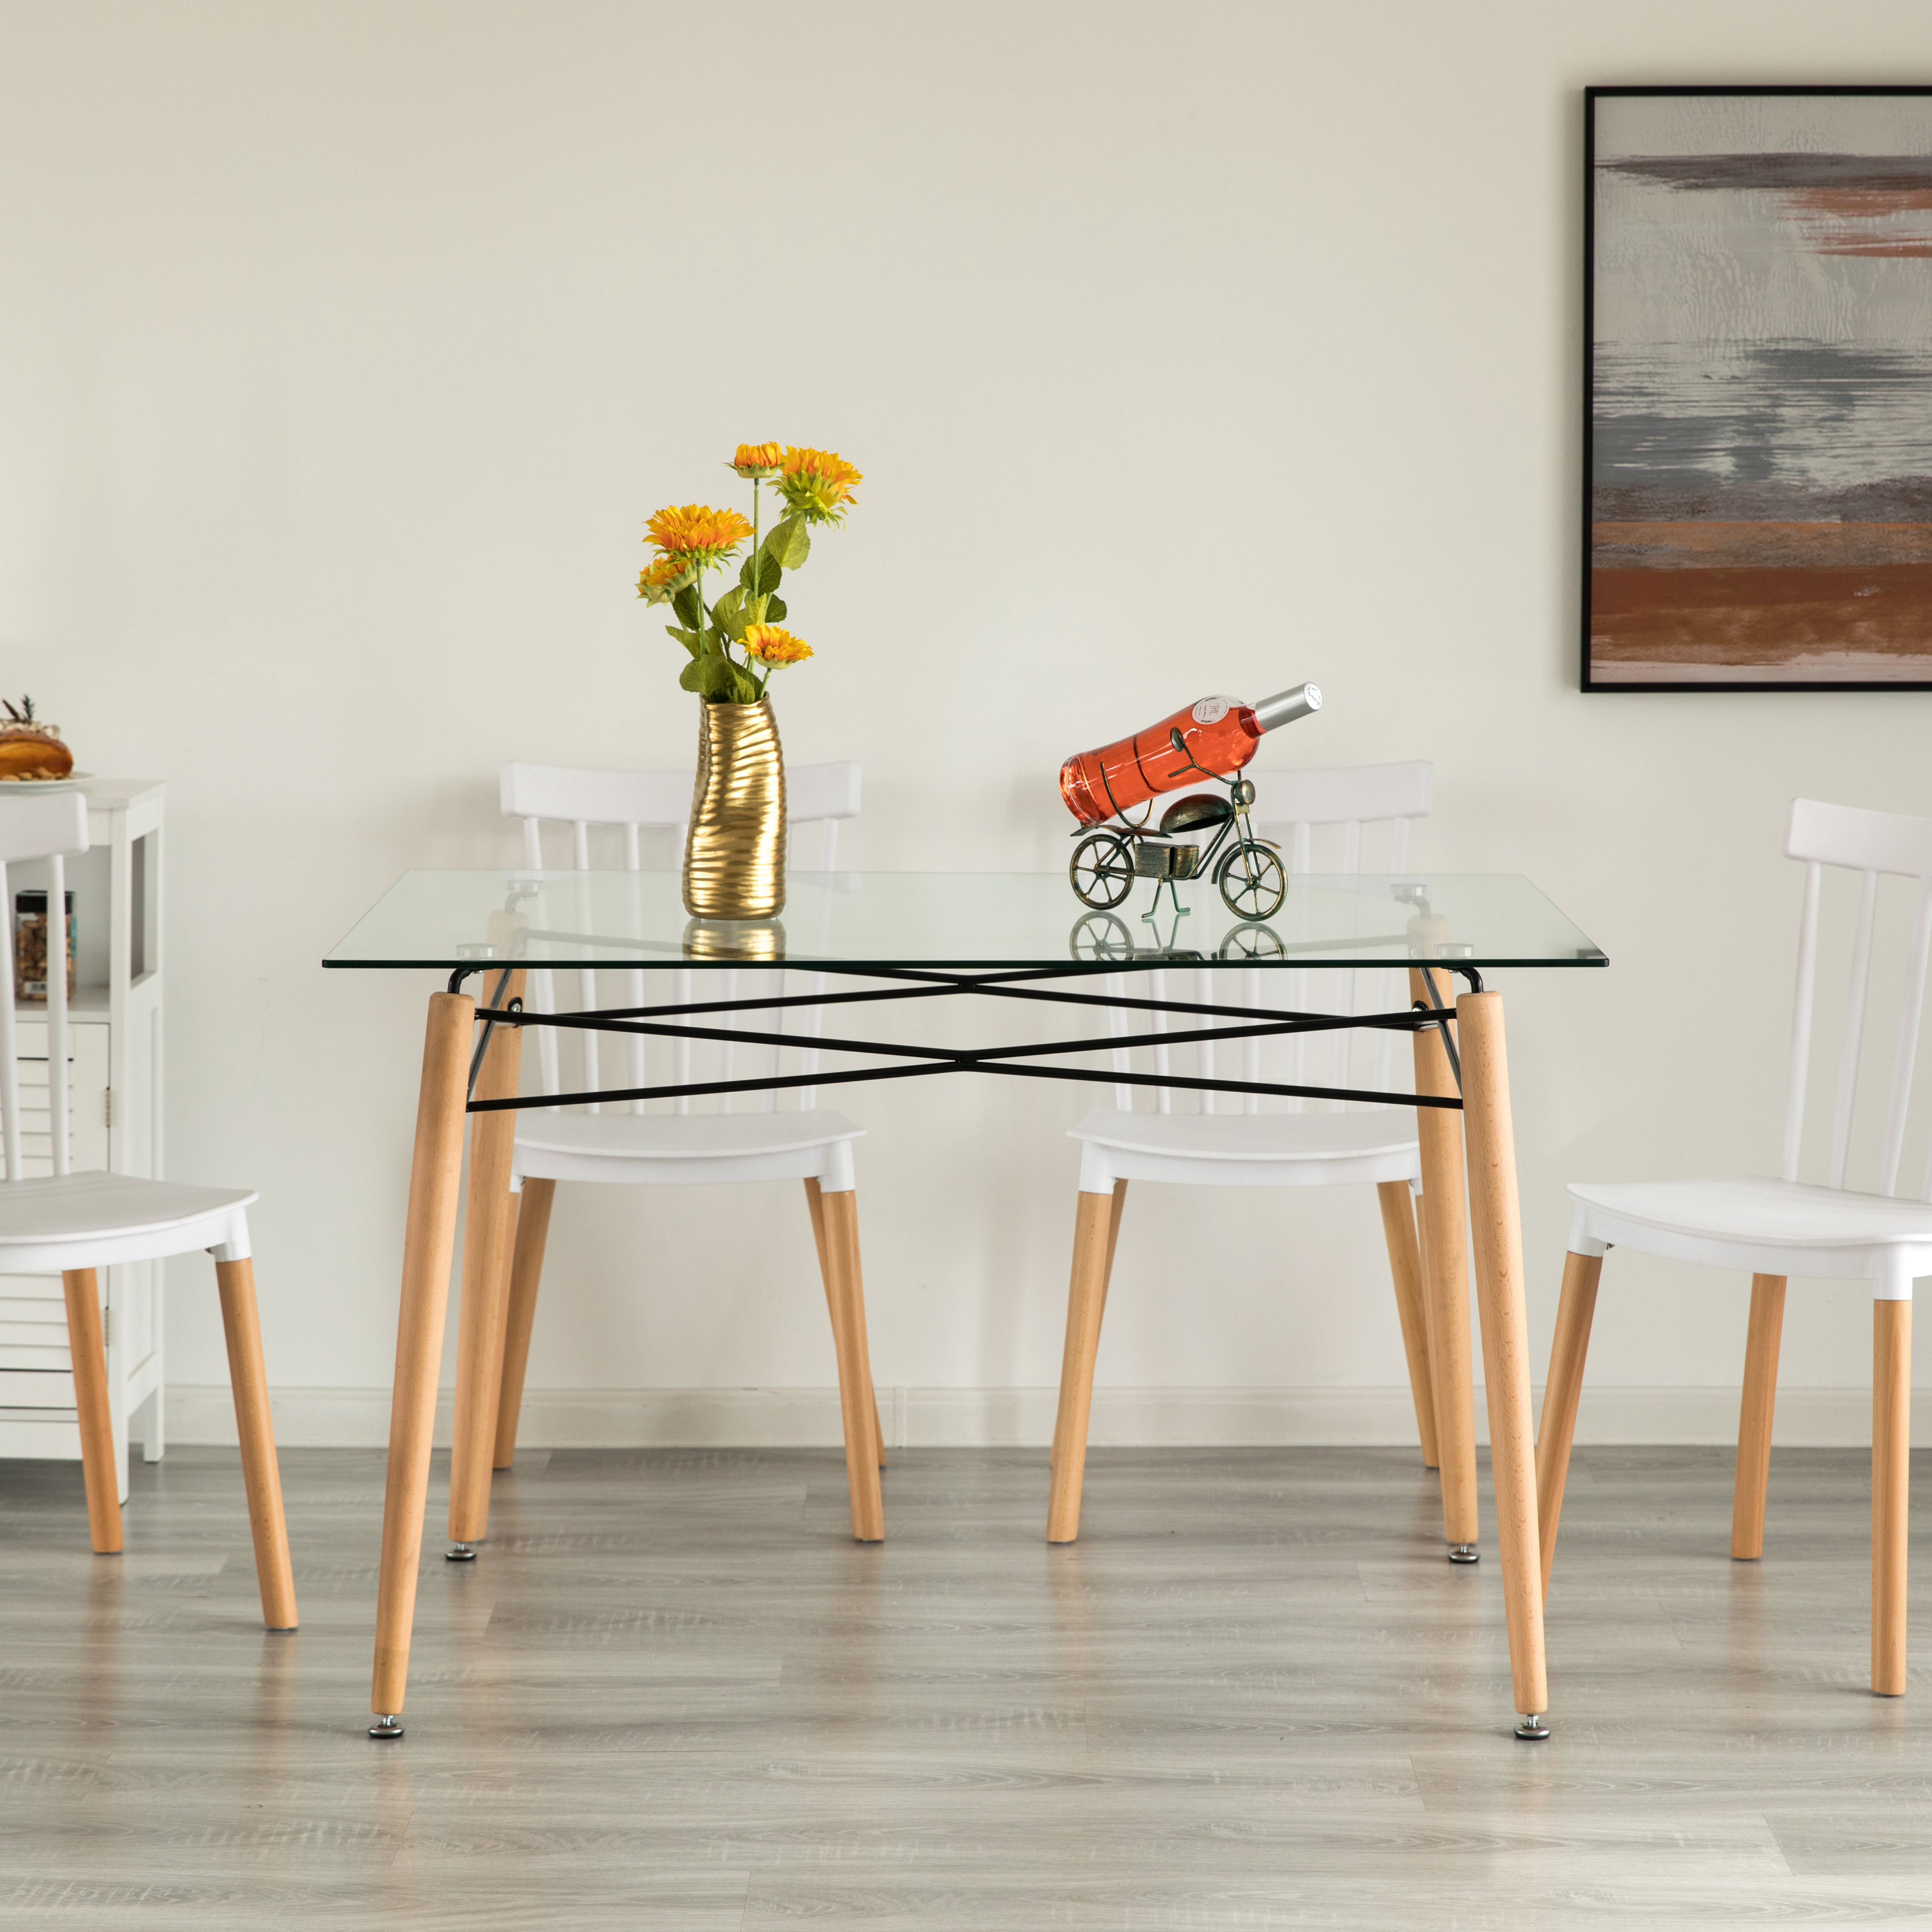 DANLONG 47'' Rectangular Folding Dining Table & Reviews - Wayfair